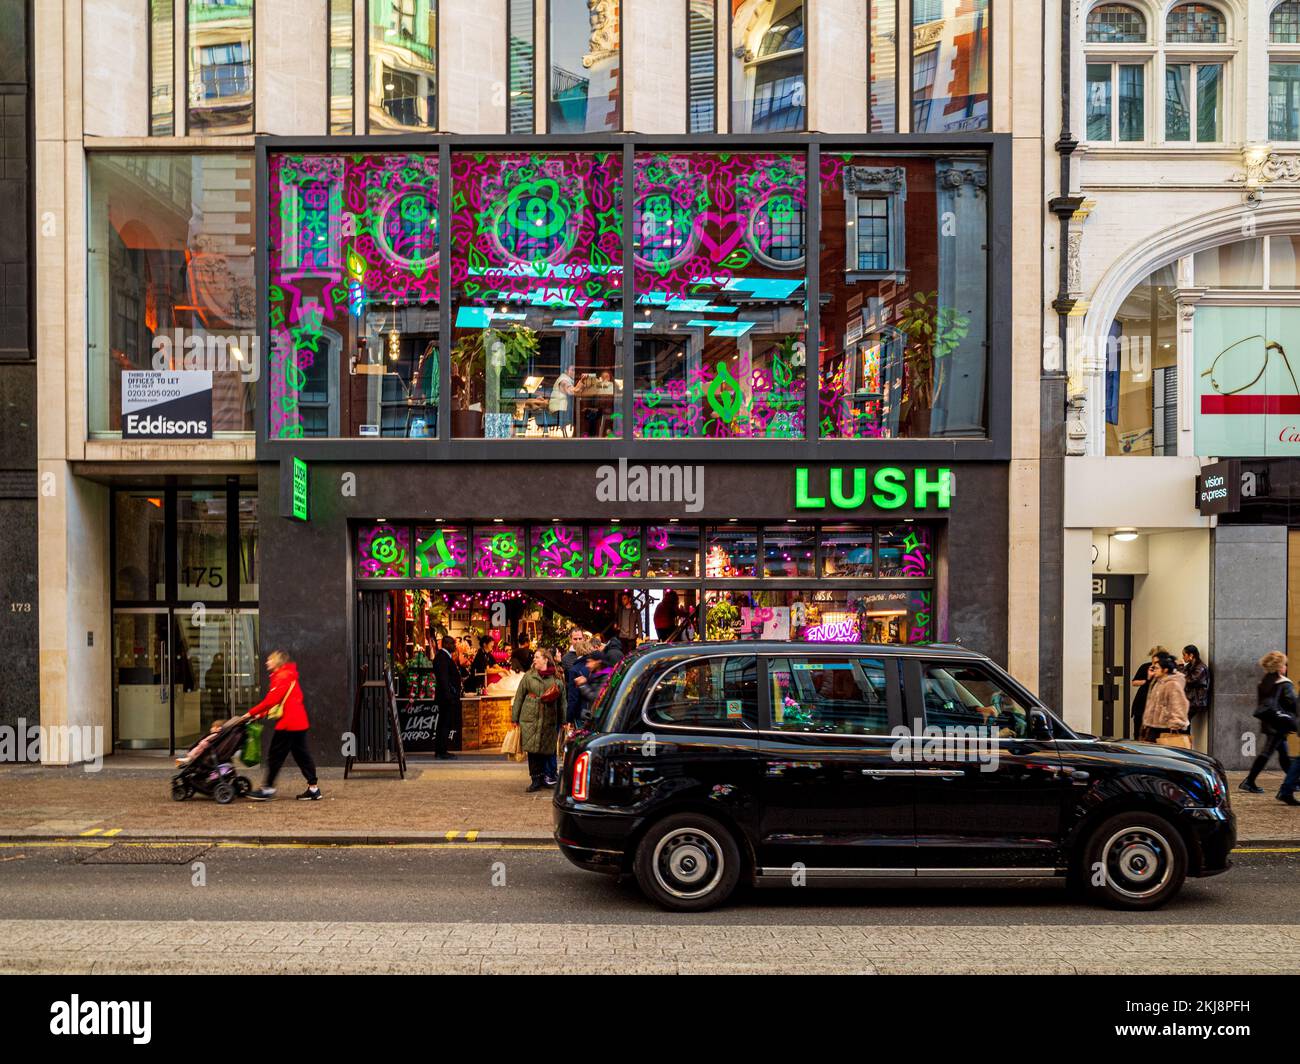 Lush Spa Oxford Street London - le magasin phare Lush Store d'Oxford St Central London, qui abrite un espace de vente et un spa. Lush a été fondée en 1995. Banque D'Images